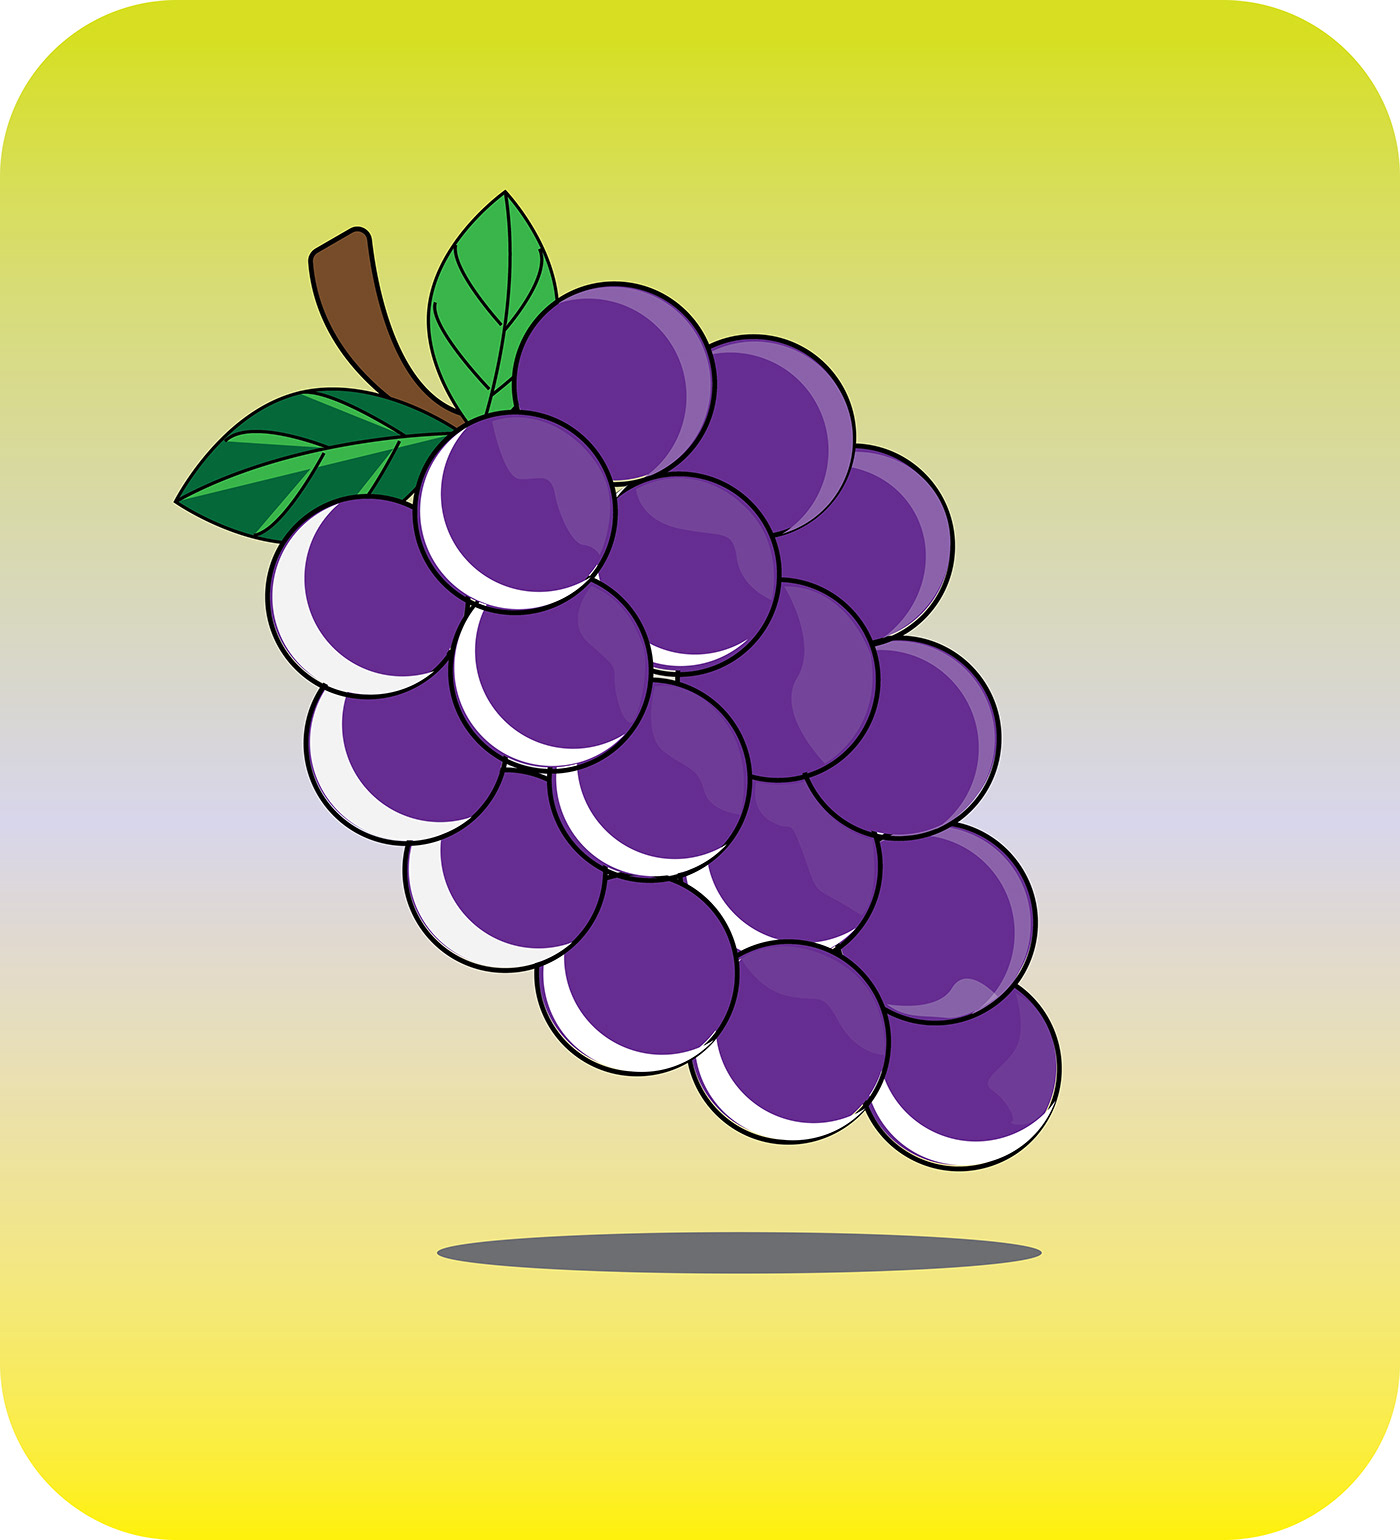 ILLUSTRATION  Fruit Illustration Food  Graphic Designer adobe illustrator vector digital illustration art cartoon Drawing 